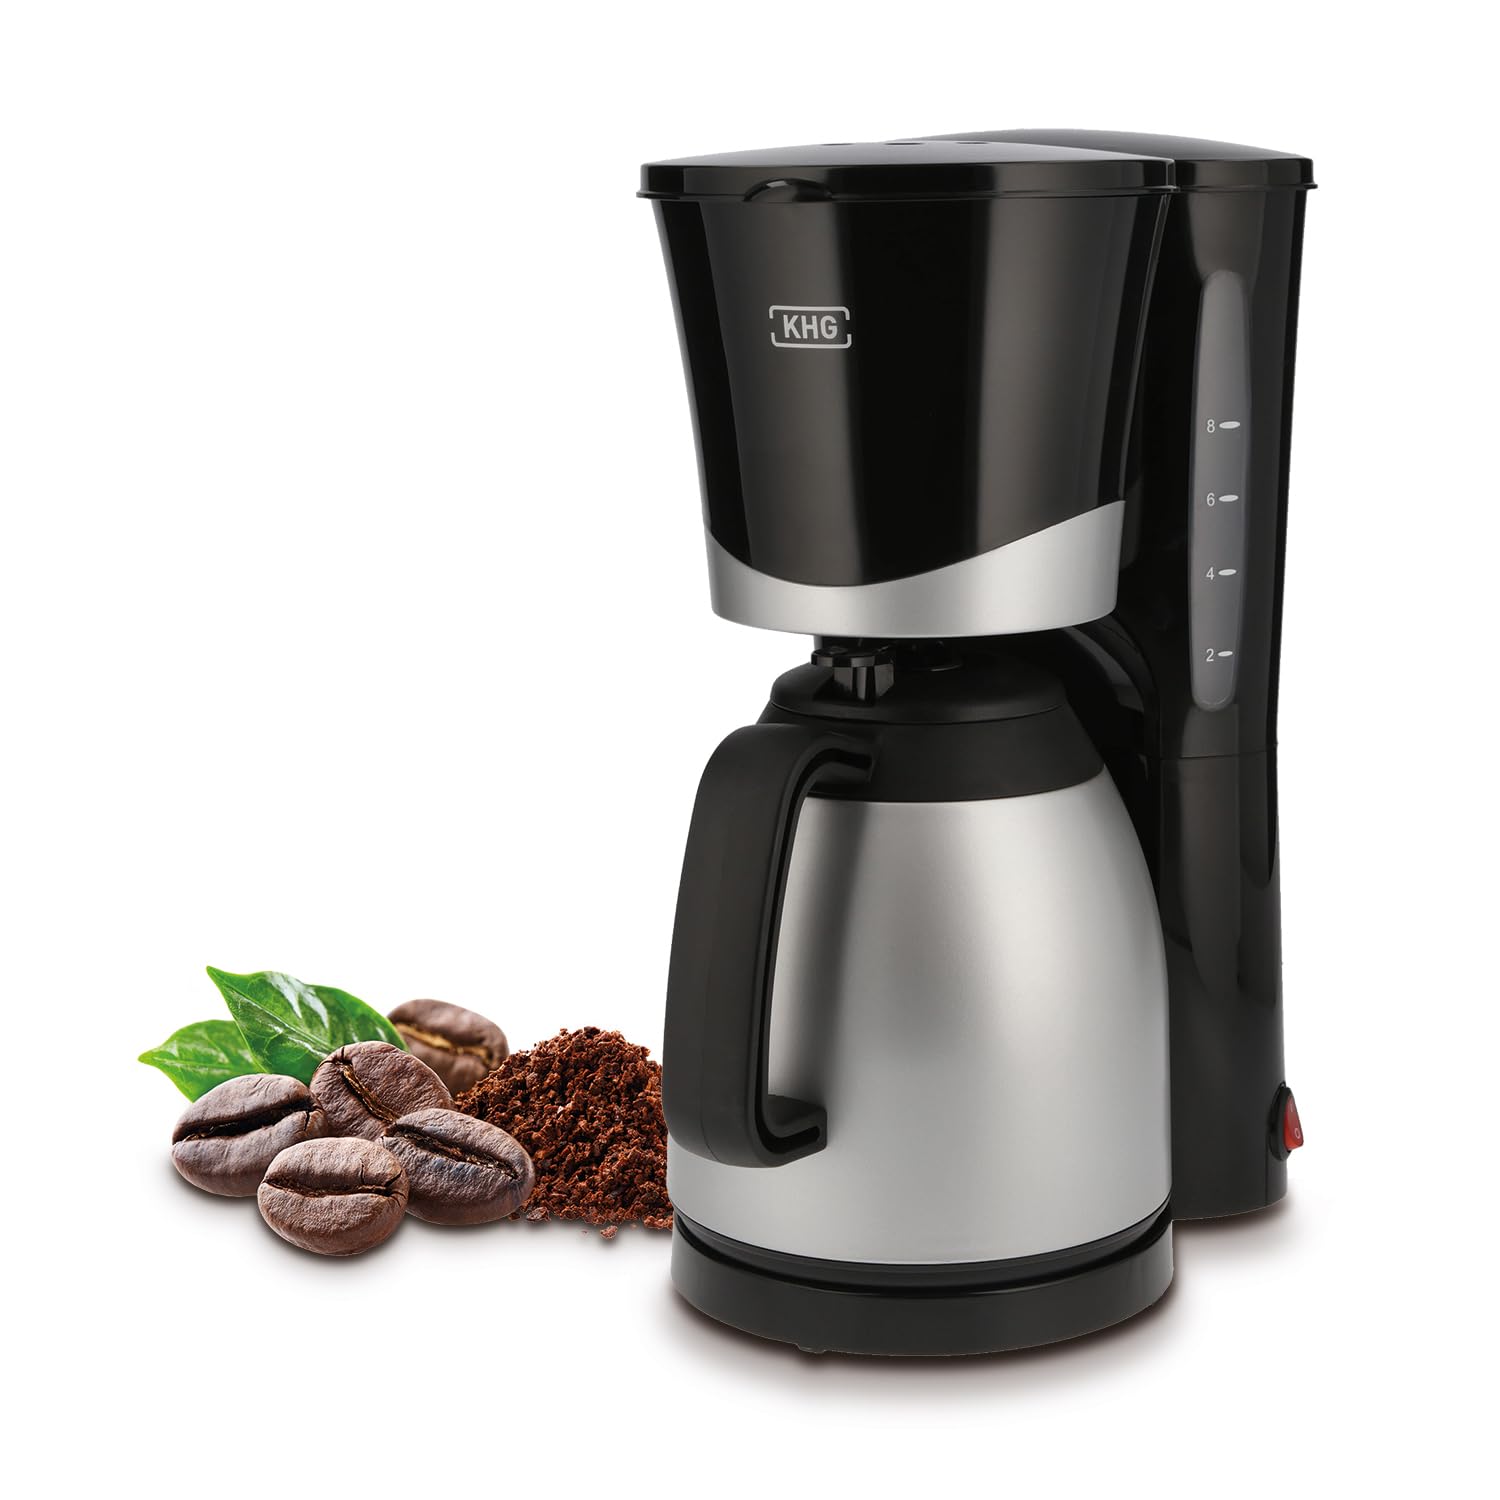 KHG Kaffeemaschine TKA-101SS aus Kunststoff/Metall in schwarz/silberfarben, mit Thermoskanne 1 Liter, Kapazität für 8 Tassen, abnehmbarer Permanentfilter, Wasserstandsanzeige, Tropfstopp